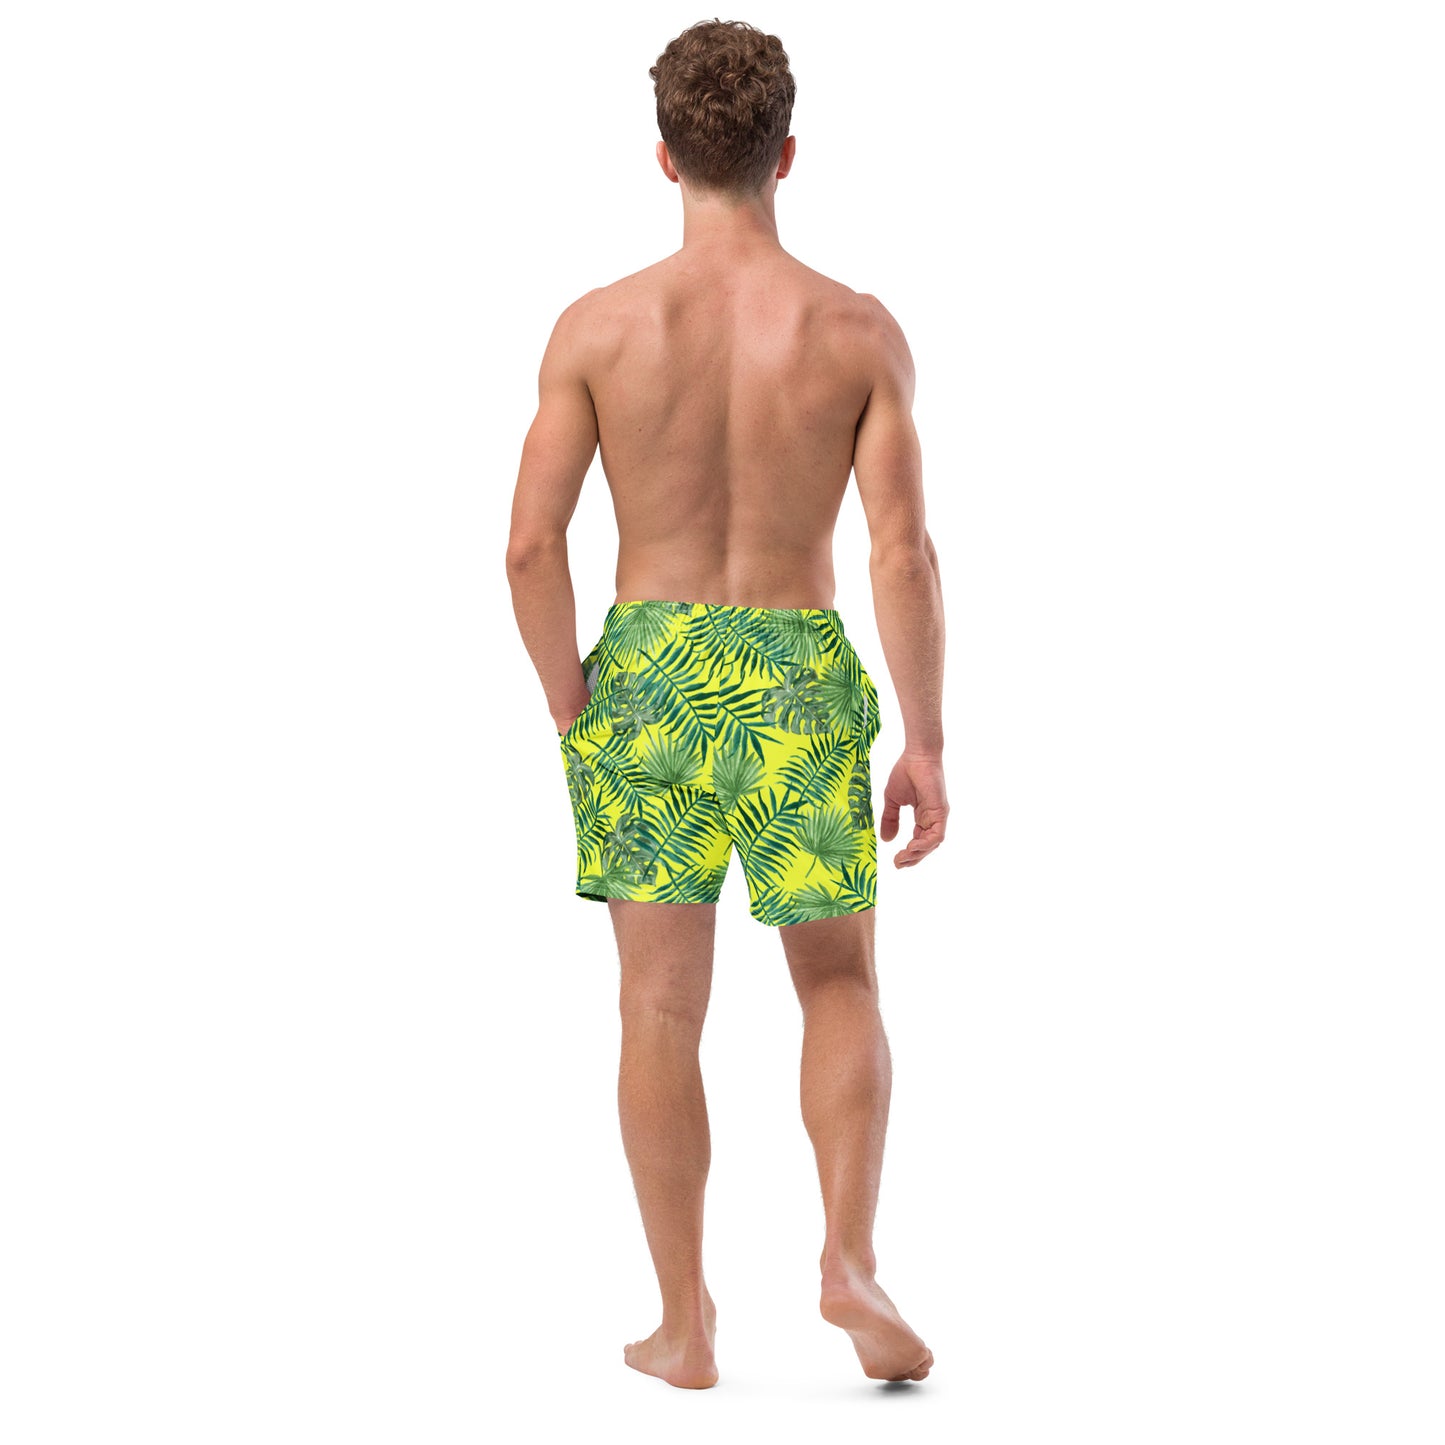 Tropical Men's Swim Trunks